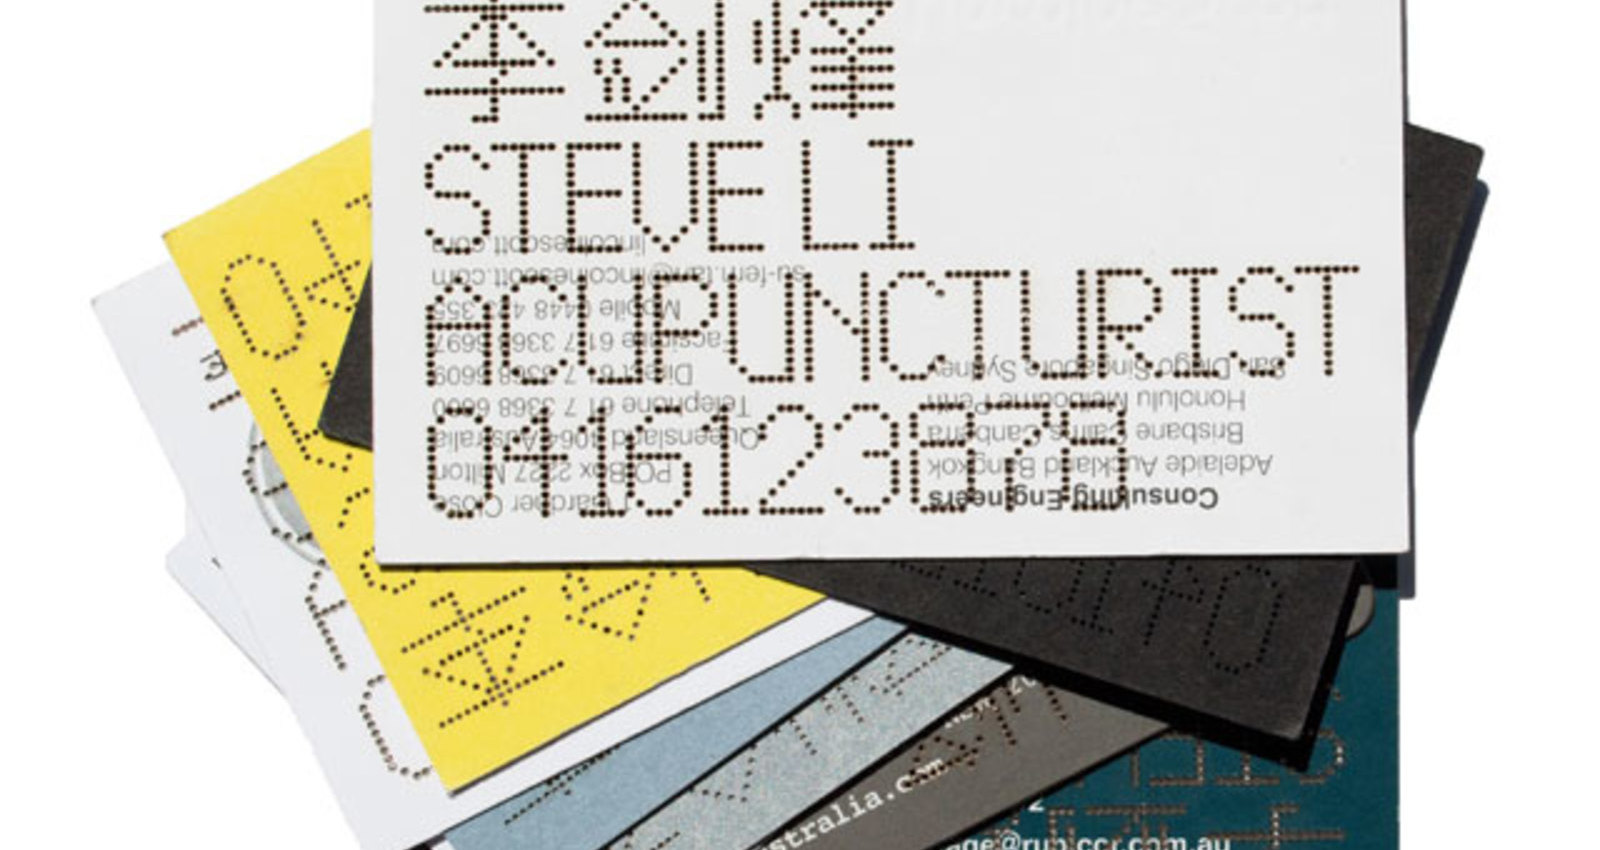 Steve Li Acupuncturist